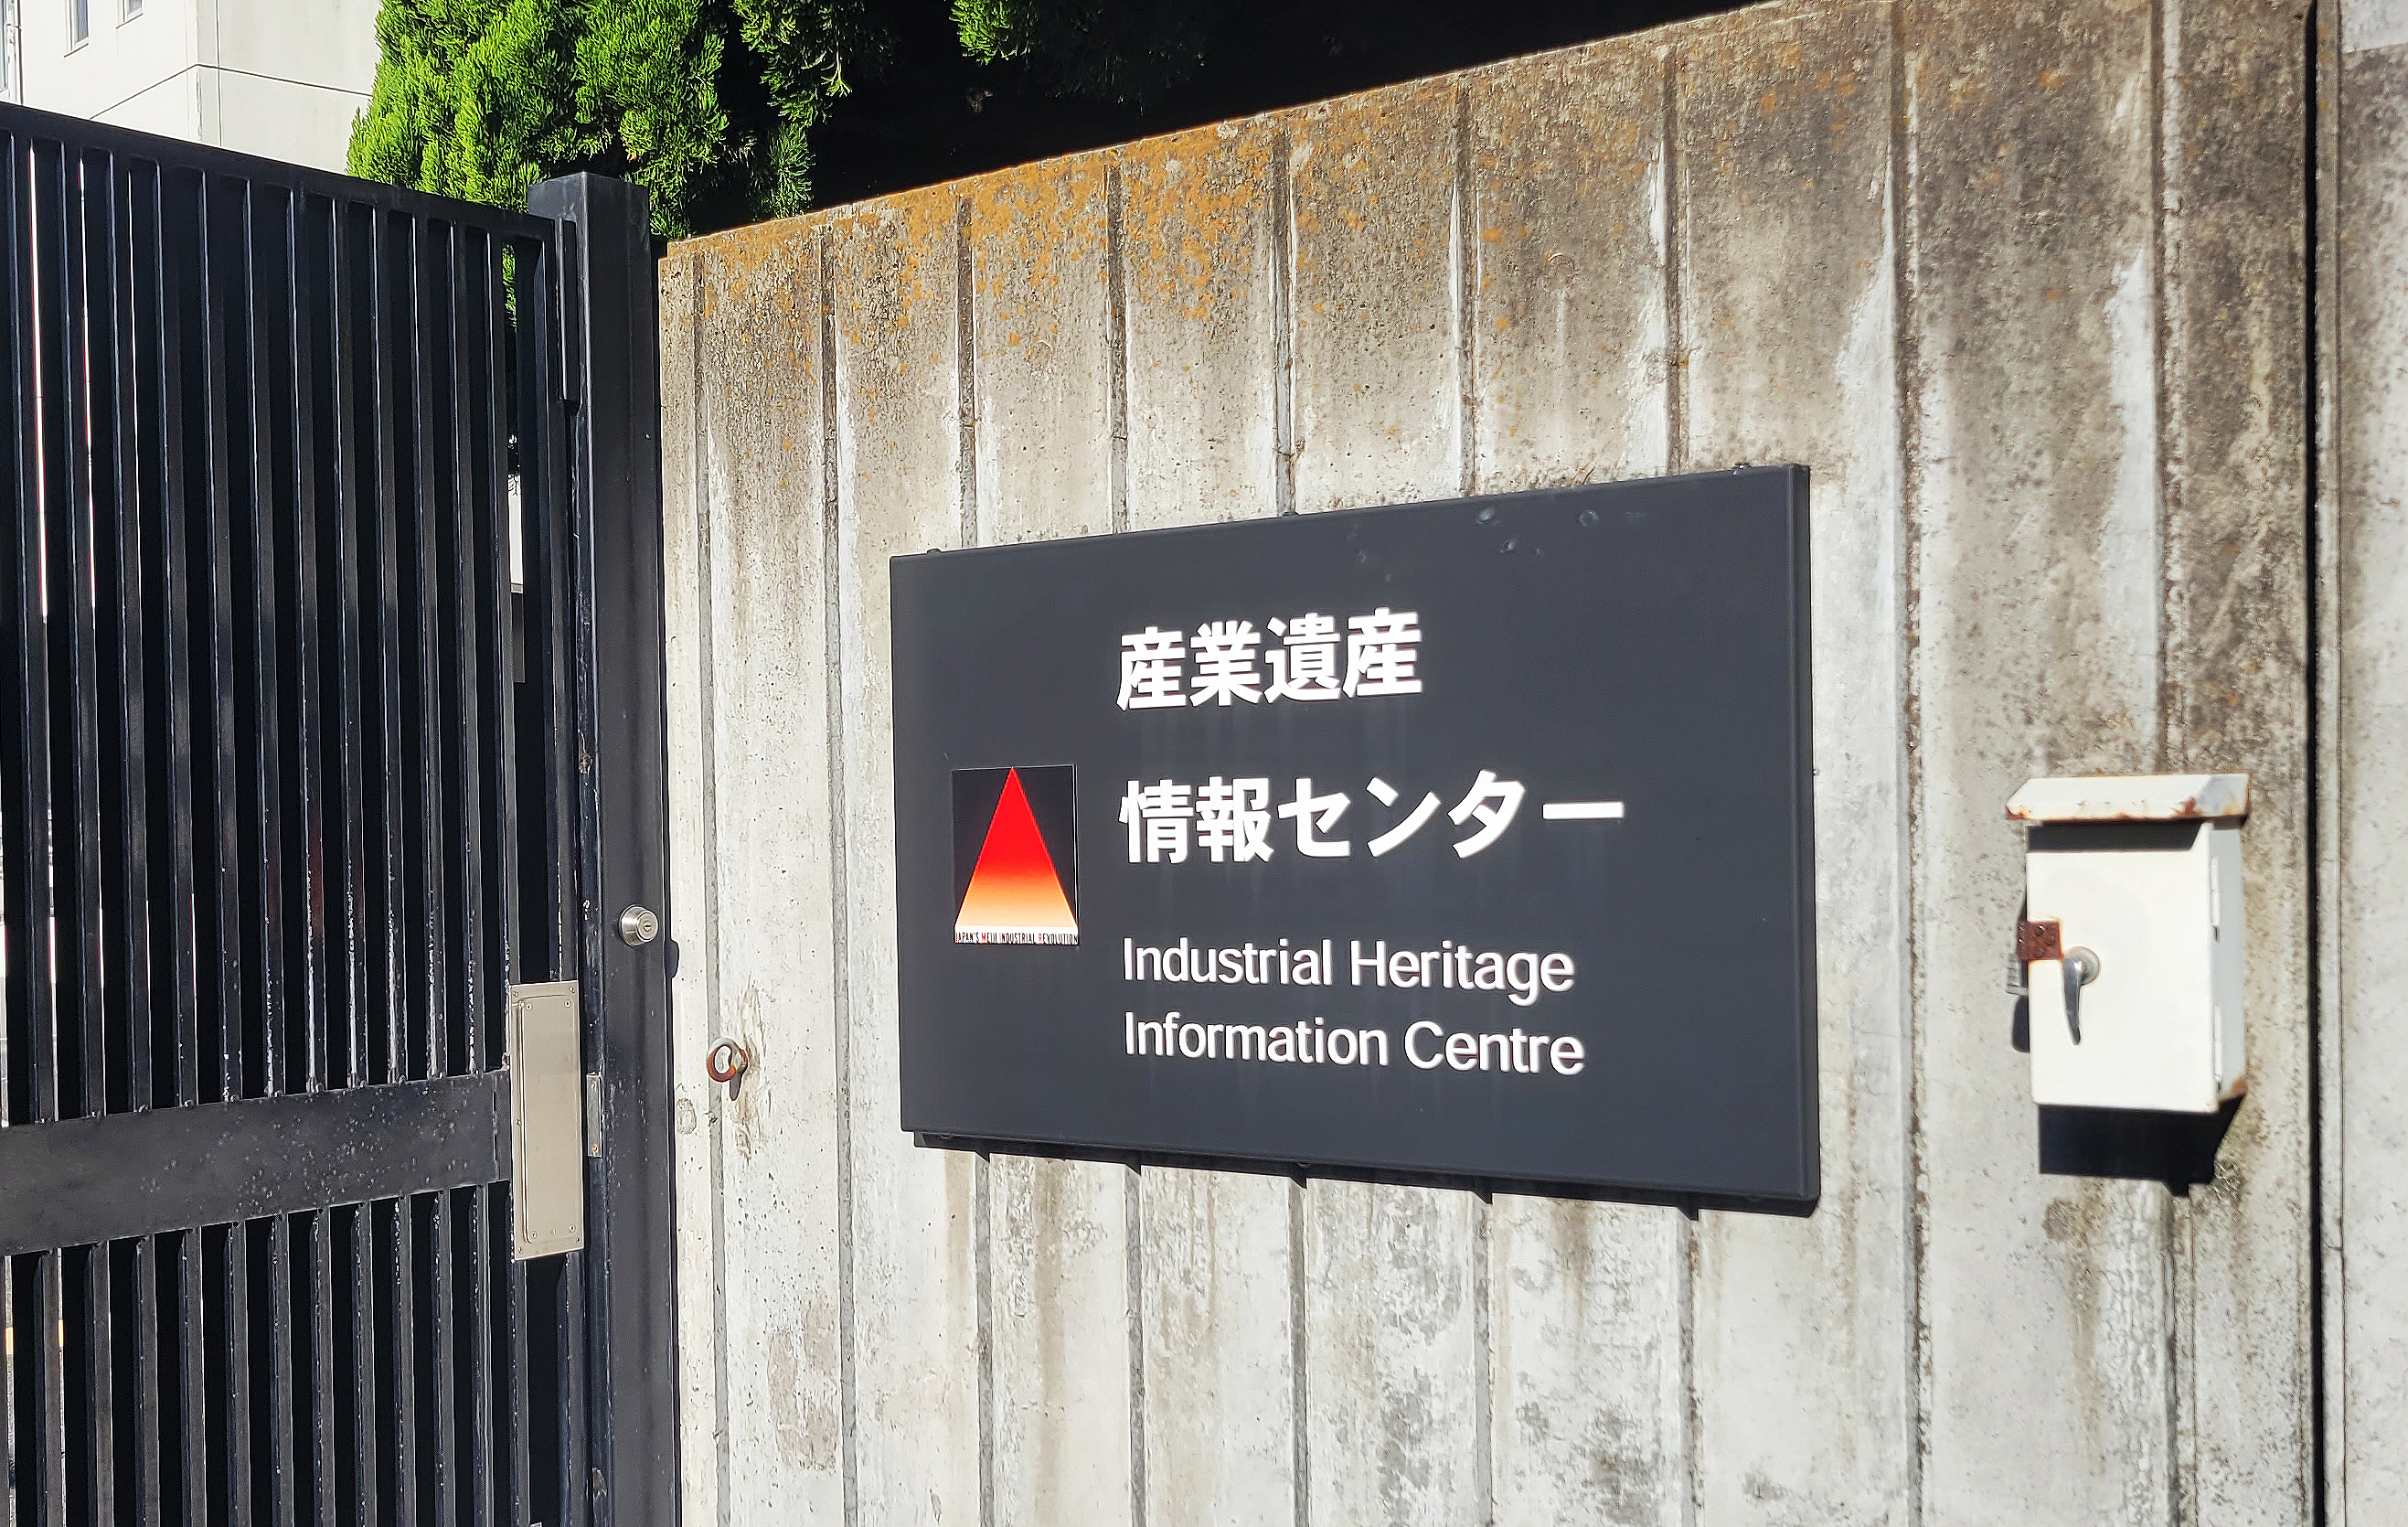 일본 산업유산정보센터 간판